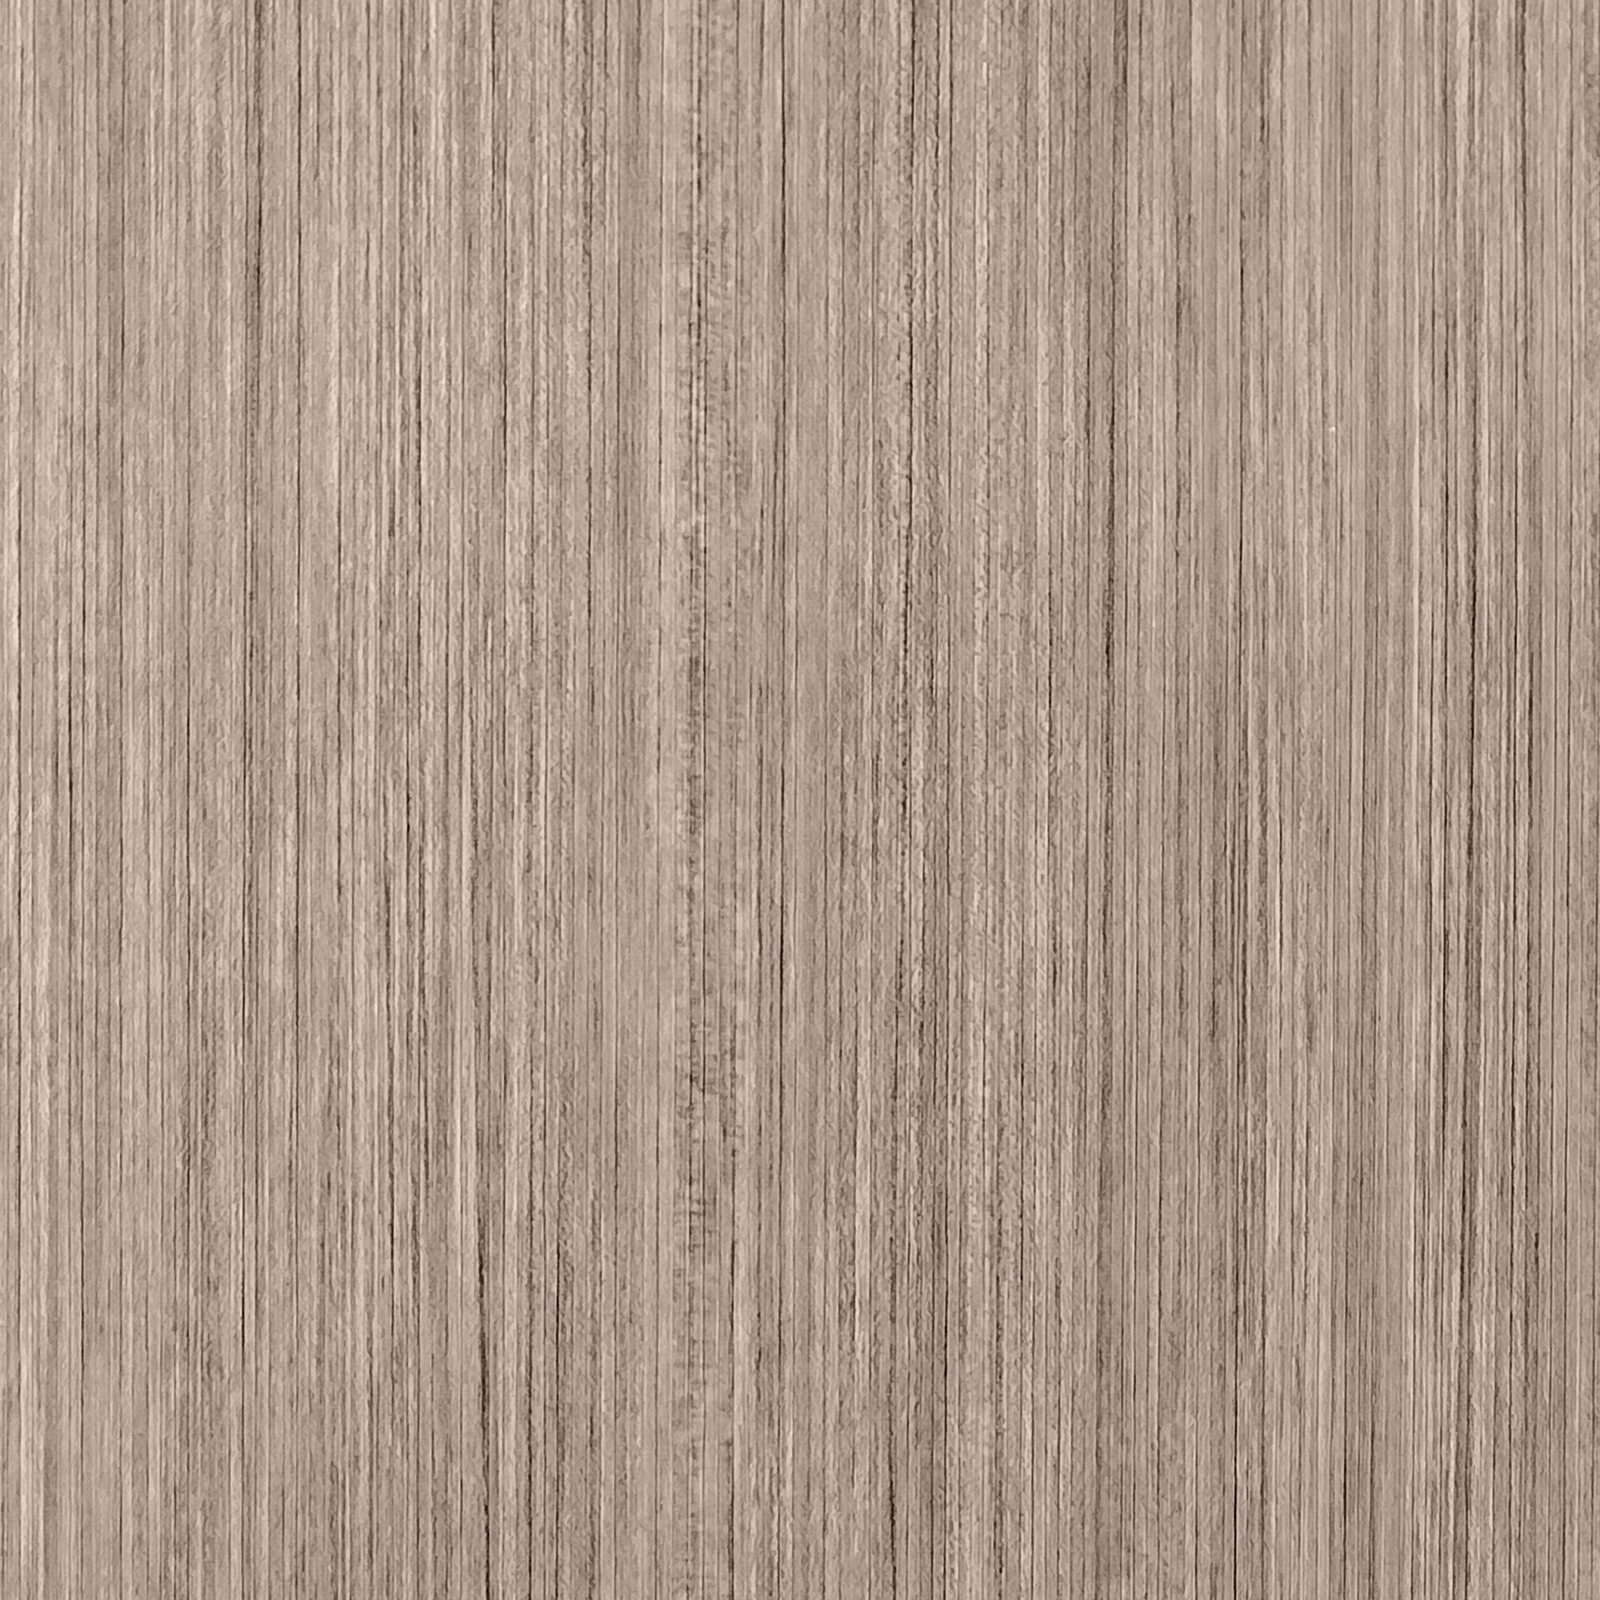 GRV 2893 - Timber